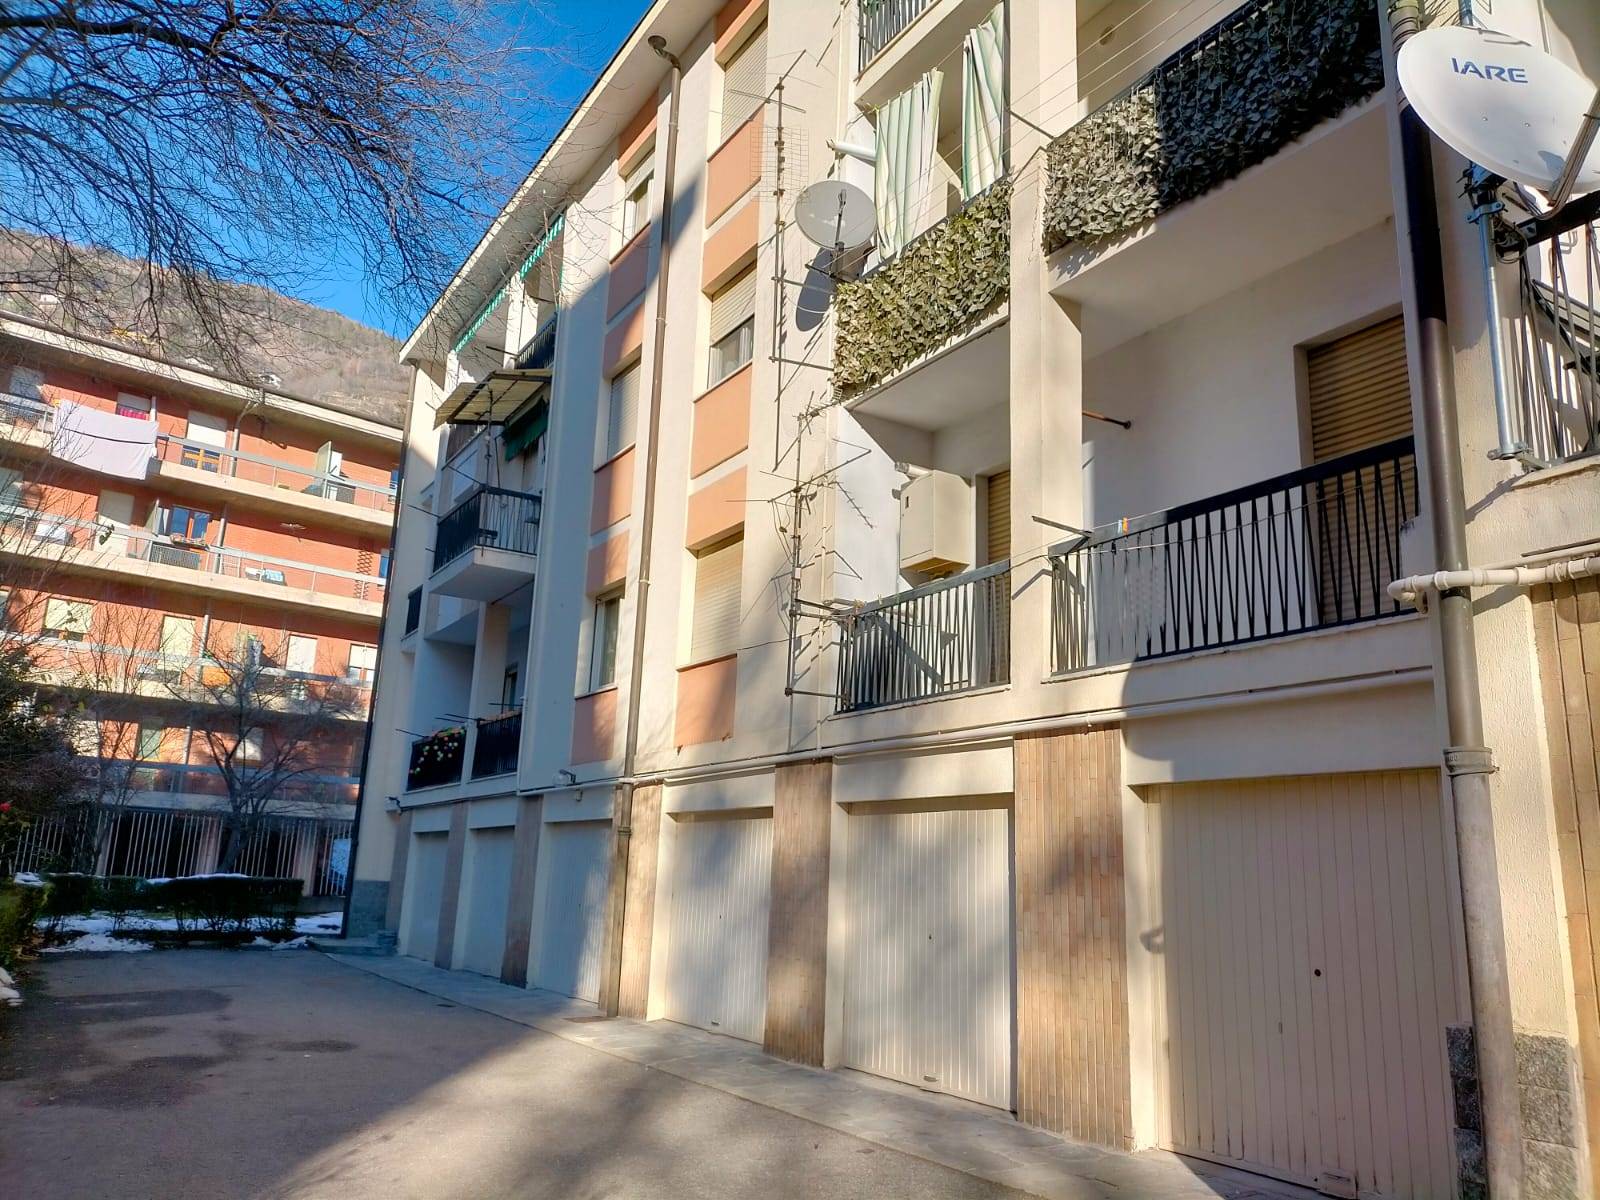 Appartamento in vendita a Aosta, 5 locali, zona Zona: Semicentro, prezzo € 180.000 | CambioCasa.it